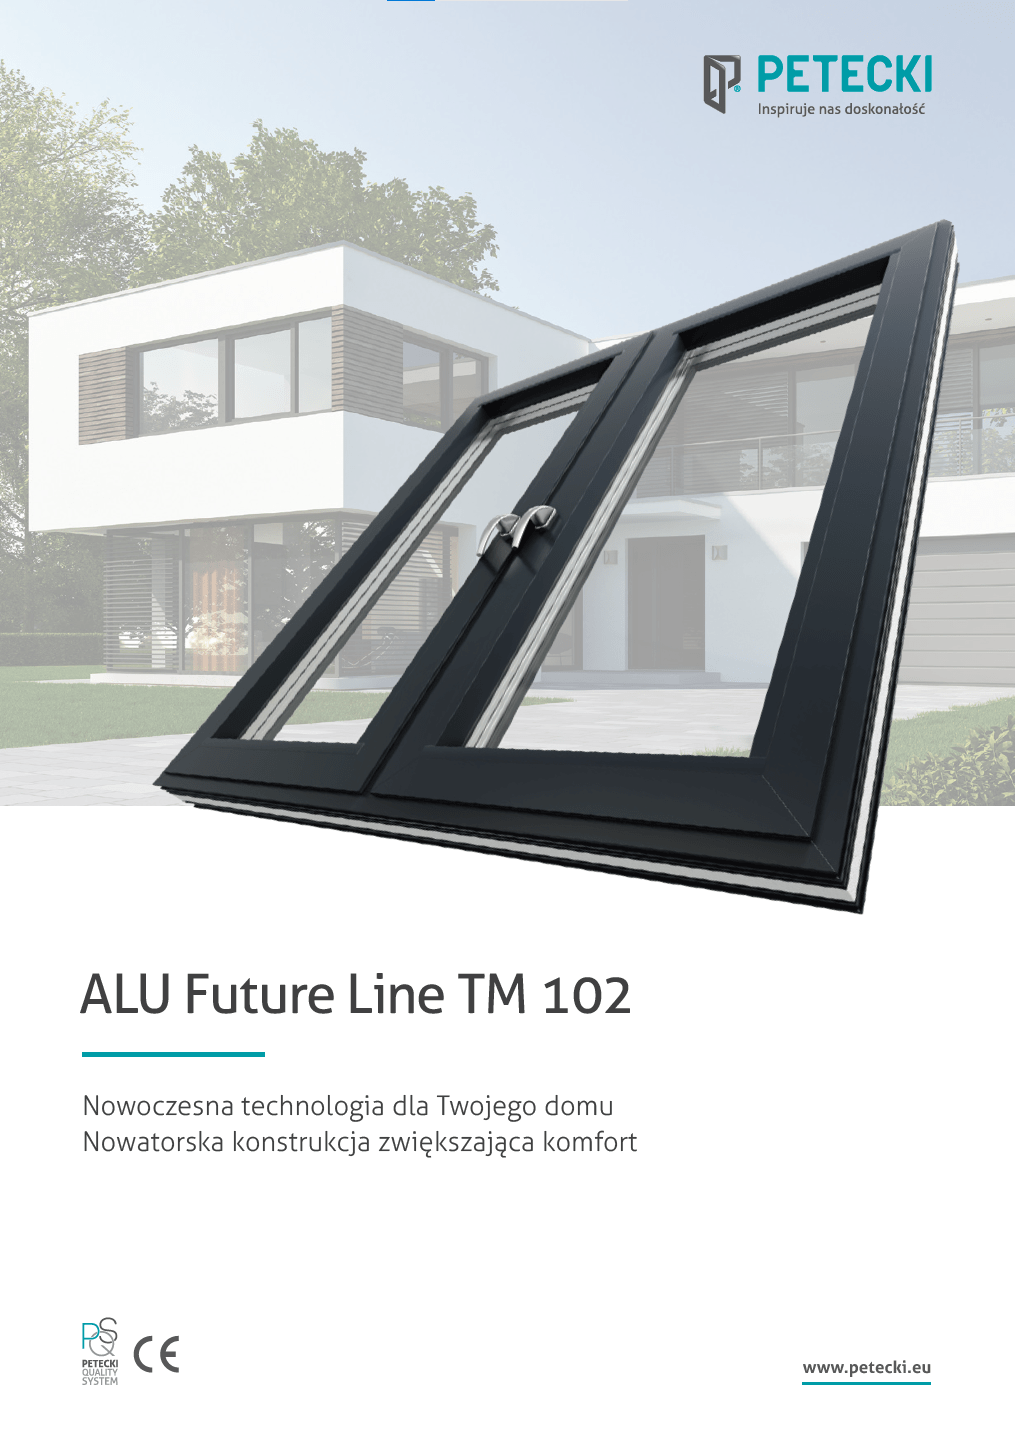 ALU Future Line TM 102 0 przód